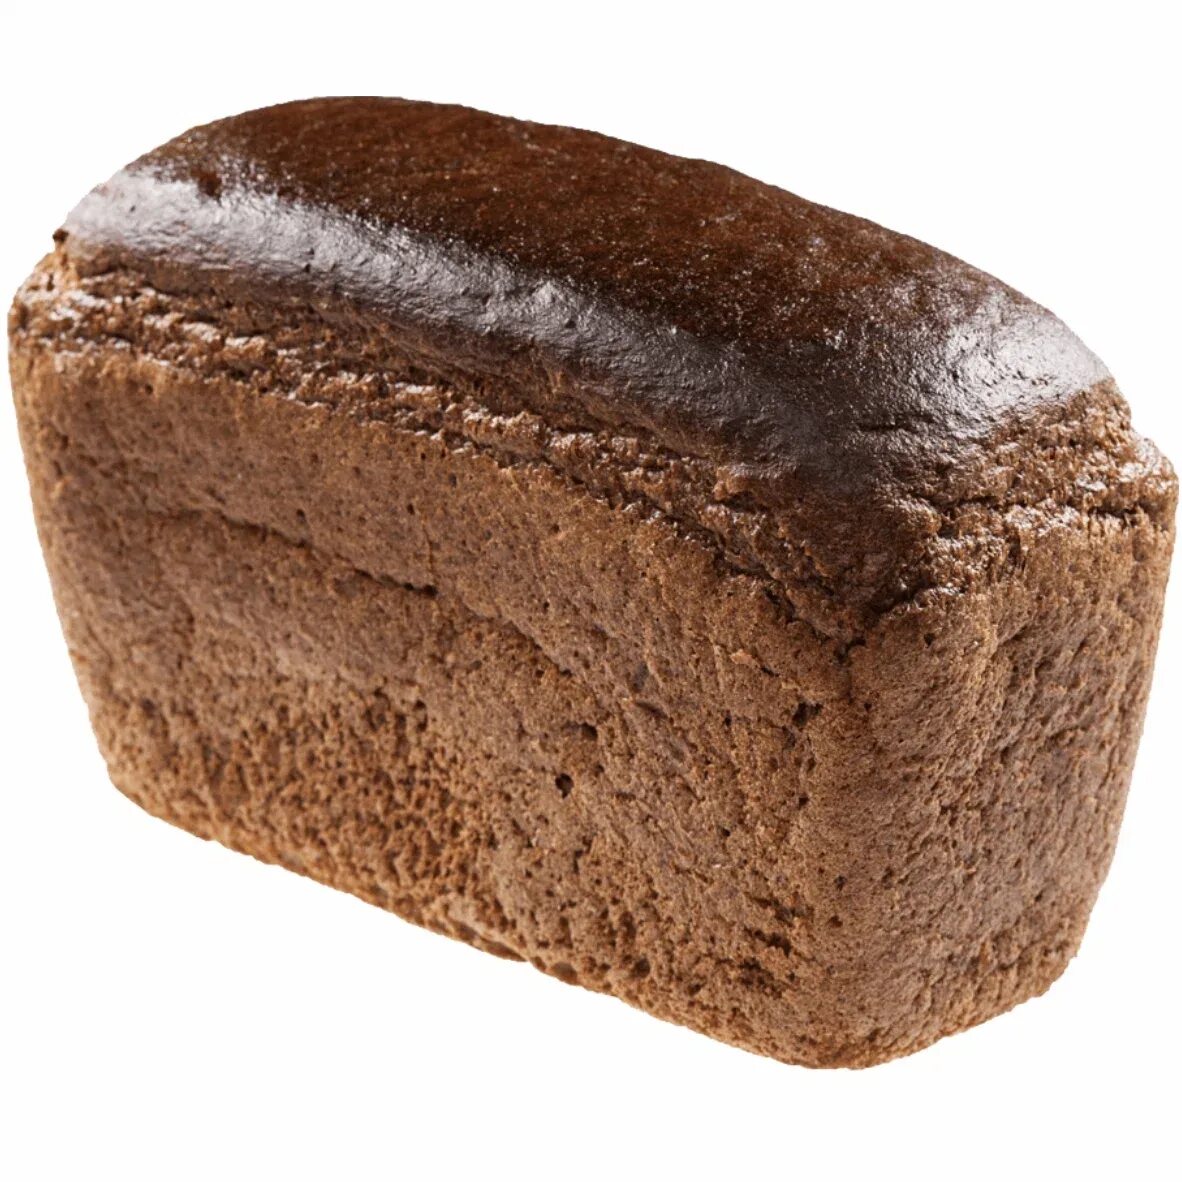 Кусок буханки хлеба. Хлеб солодовый ржано пшеничный. Буханка серого хлеба. Черный хлеб. Буханка черного хлеба.